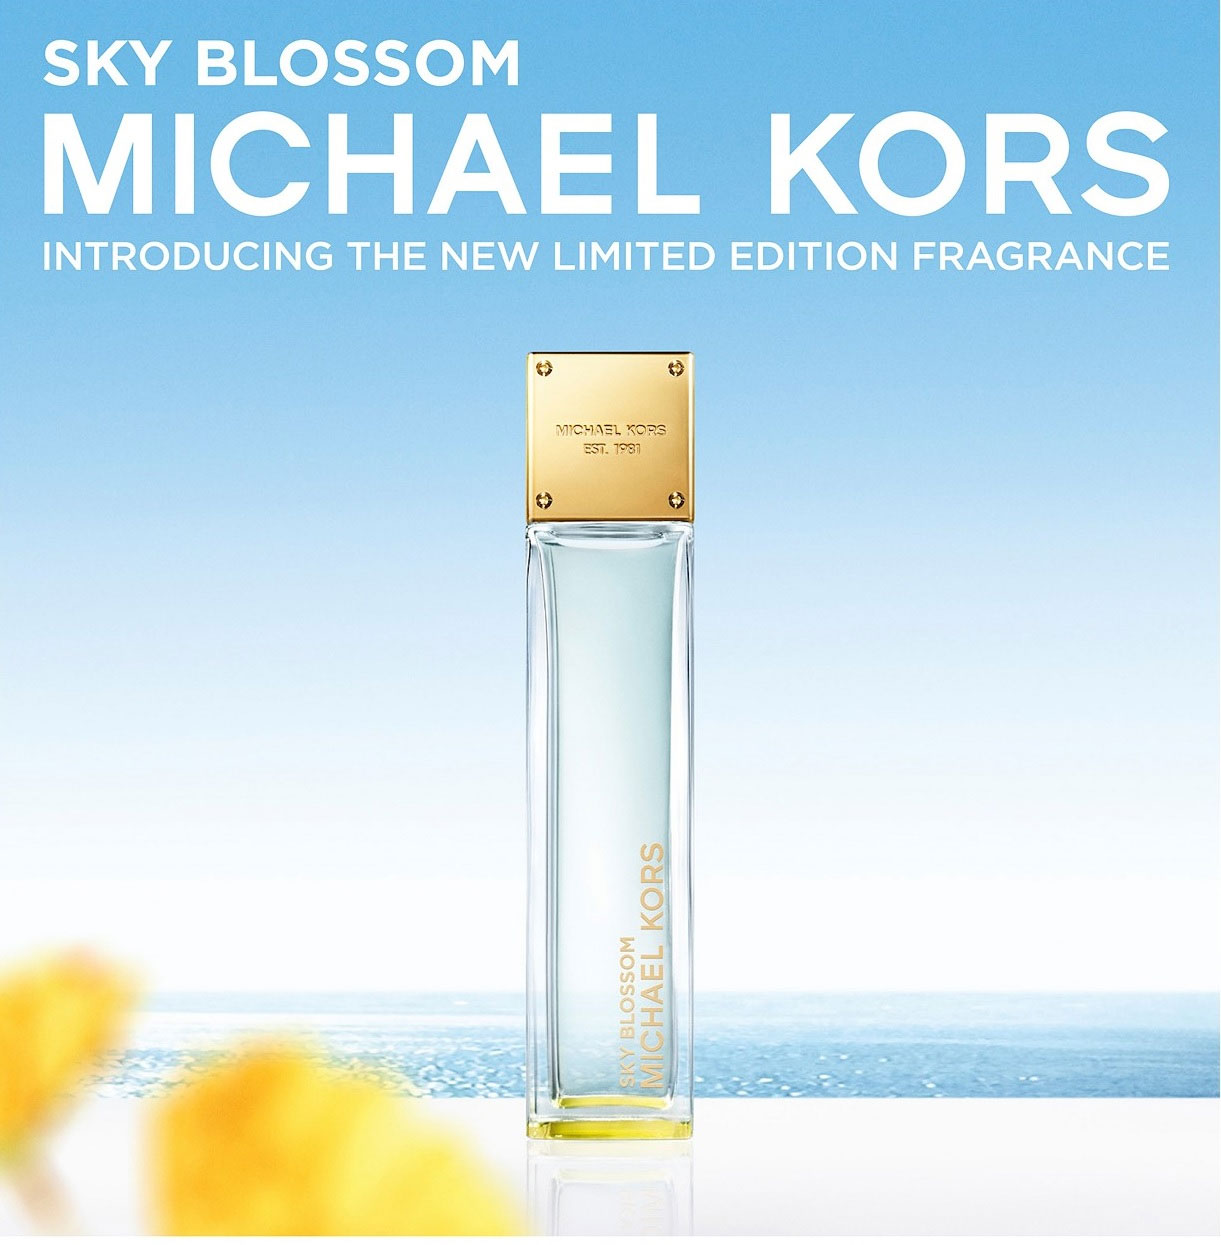 sky blossom perfume